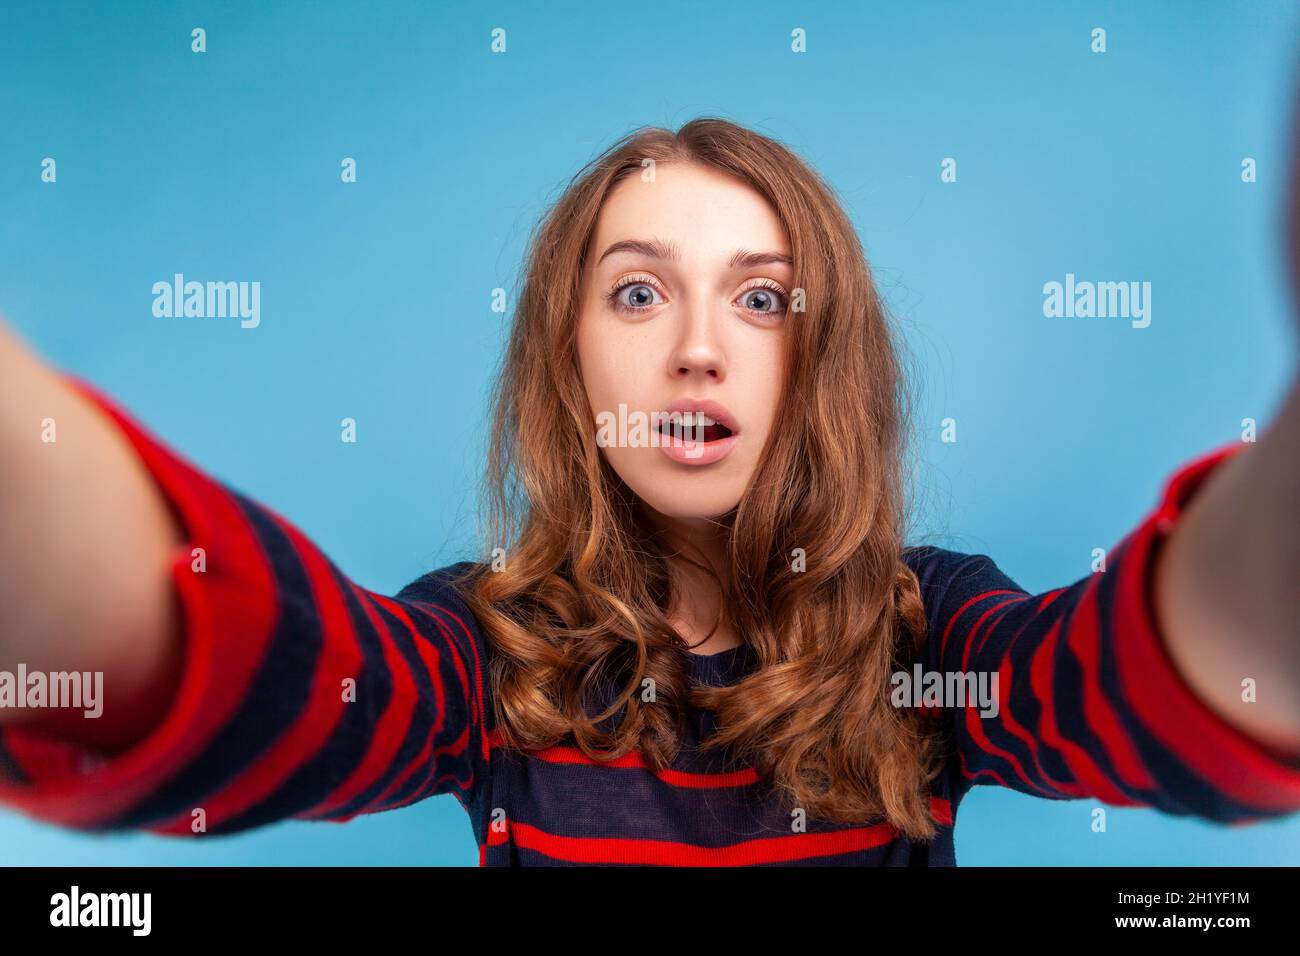 Donna con espressione facciale sorpresa che prende selfie, punto di vista della foto, posa con bocca aperta, indossando un pullover casual a righe. Studio interno girato isolato su sfondo blu. Foto Stock